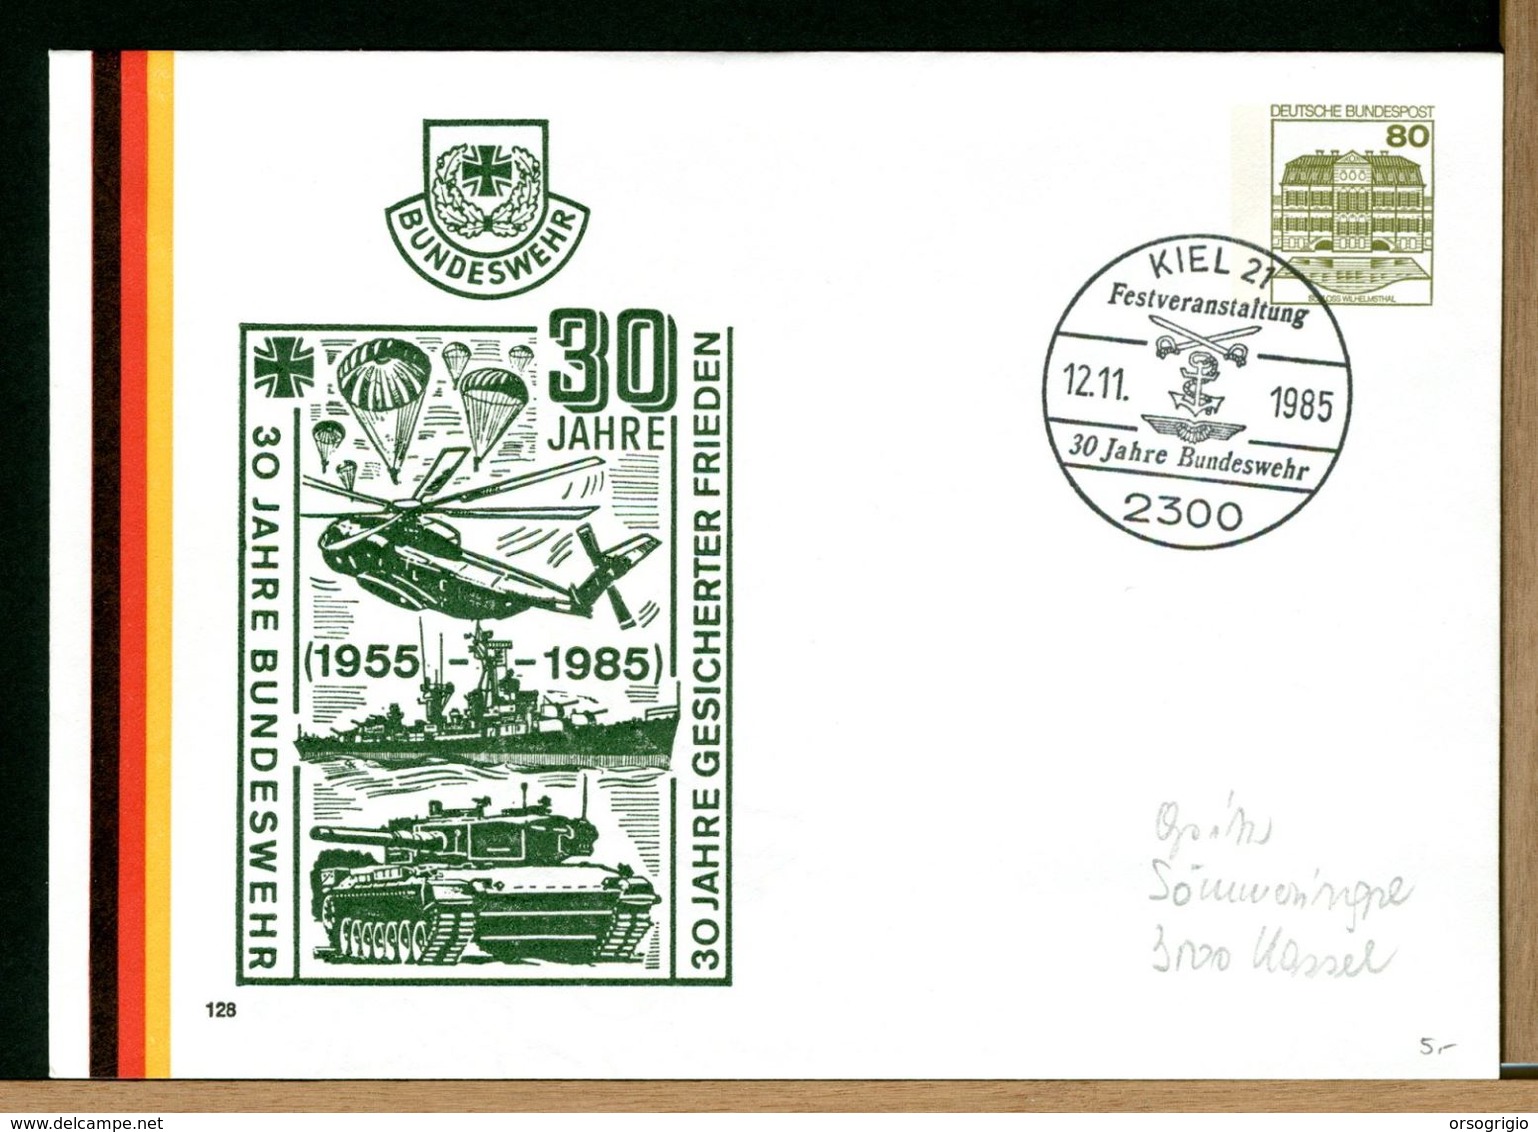 DEUTSCHE - BUNDESWEHR - KIEL - FESTVERANSTALTUNG 1985 - Enveloppes Privées - Neuves